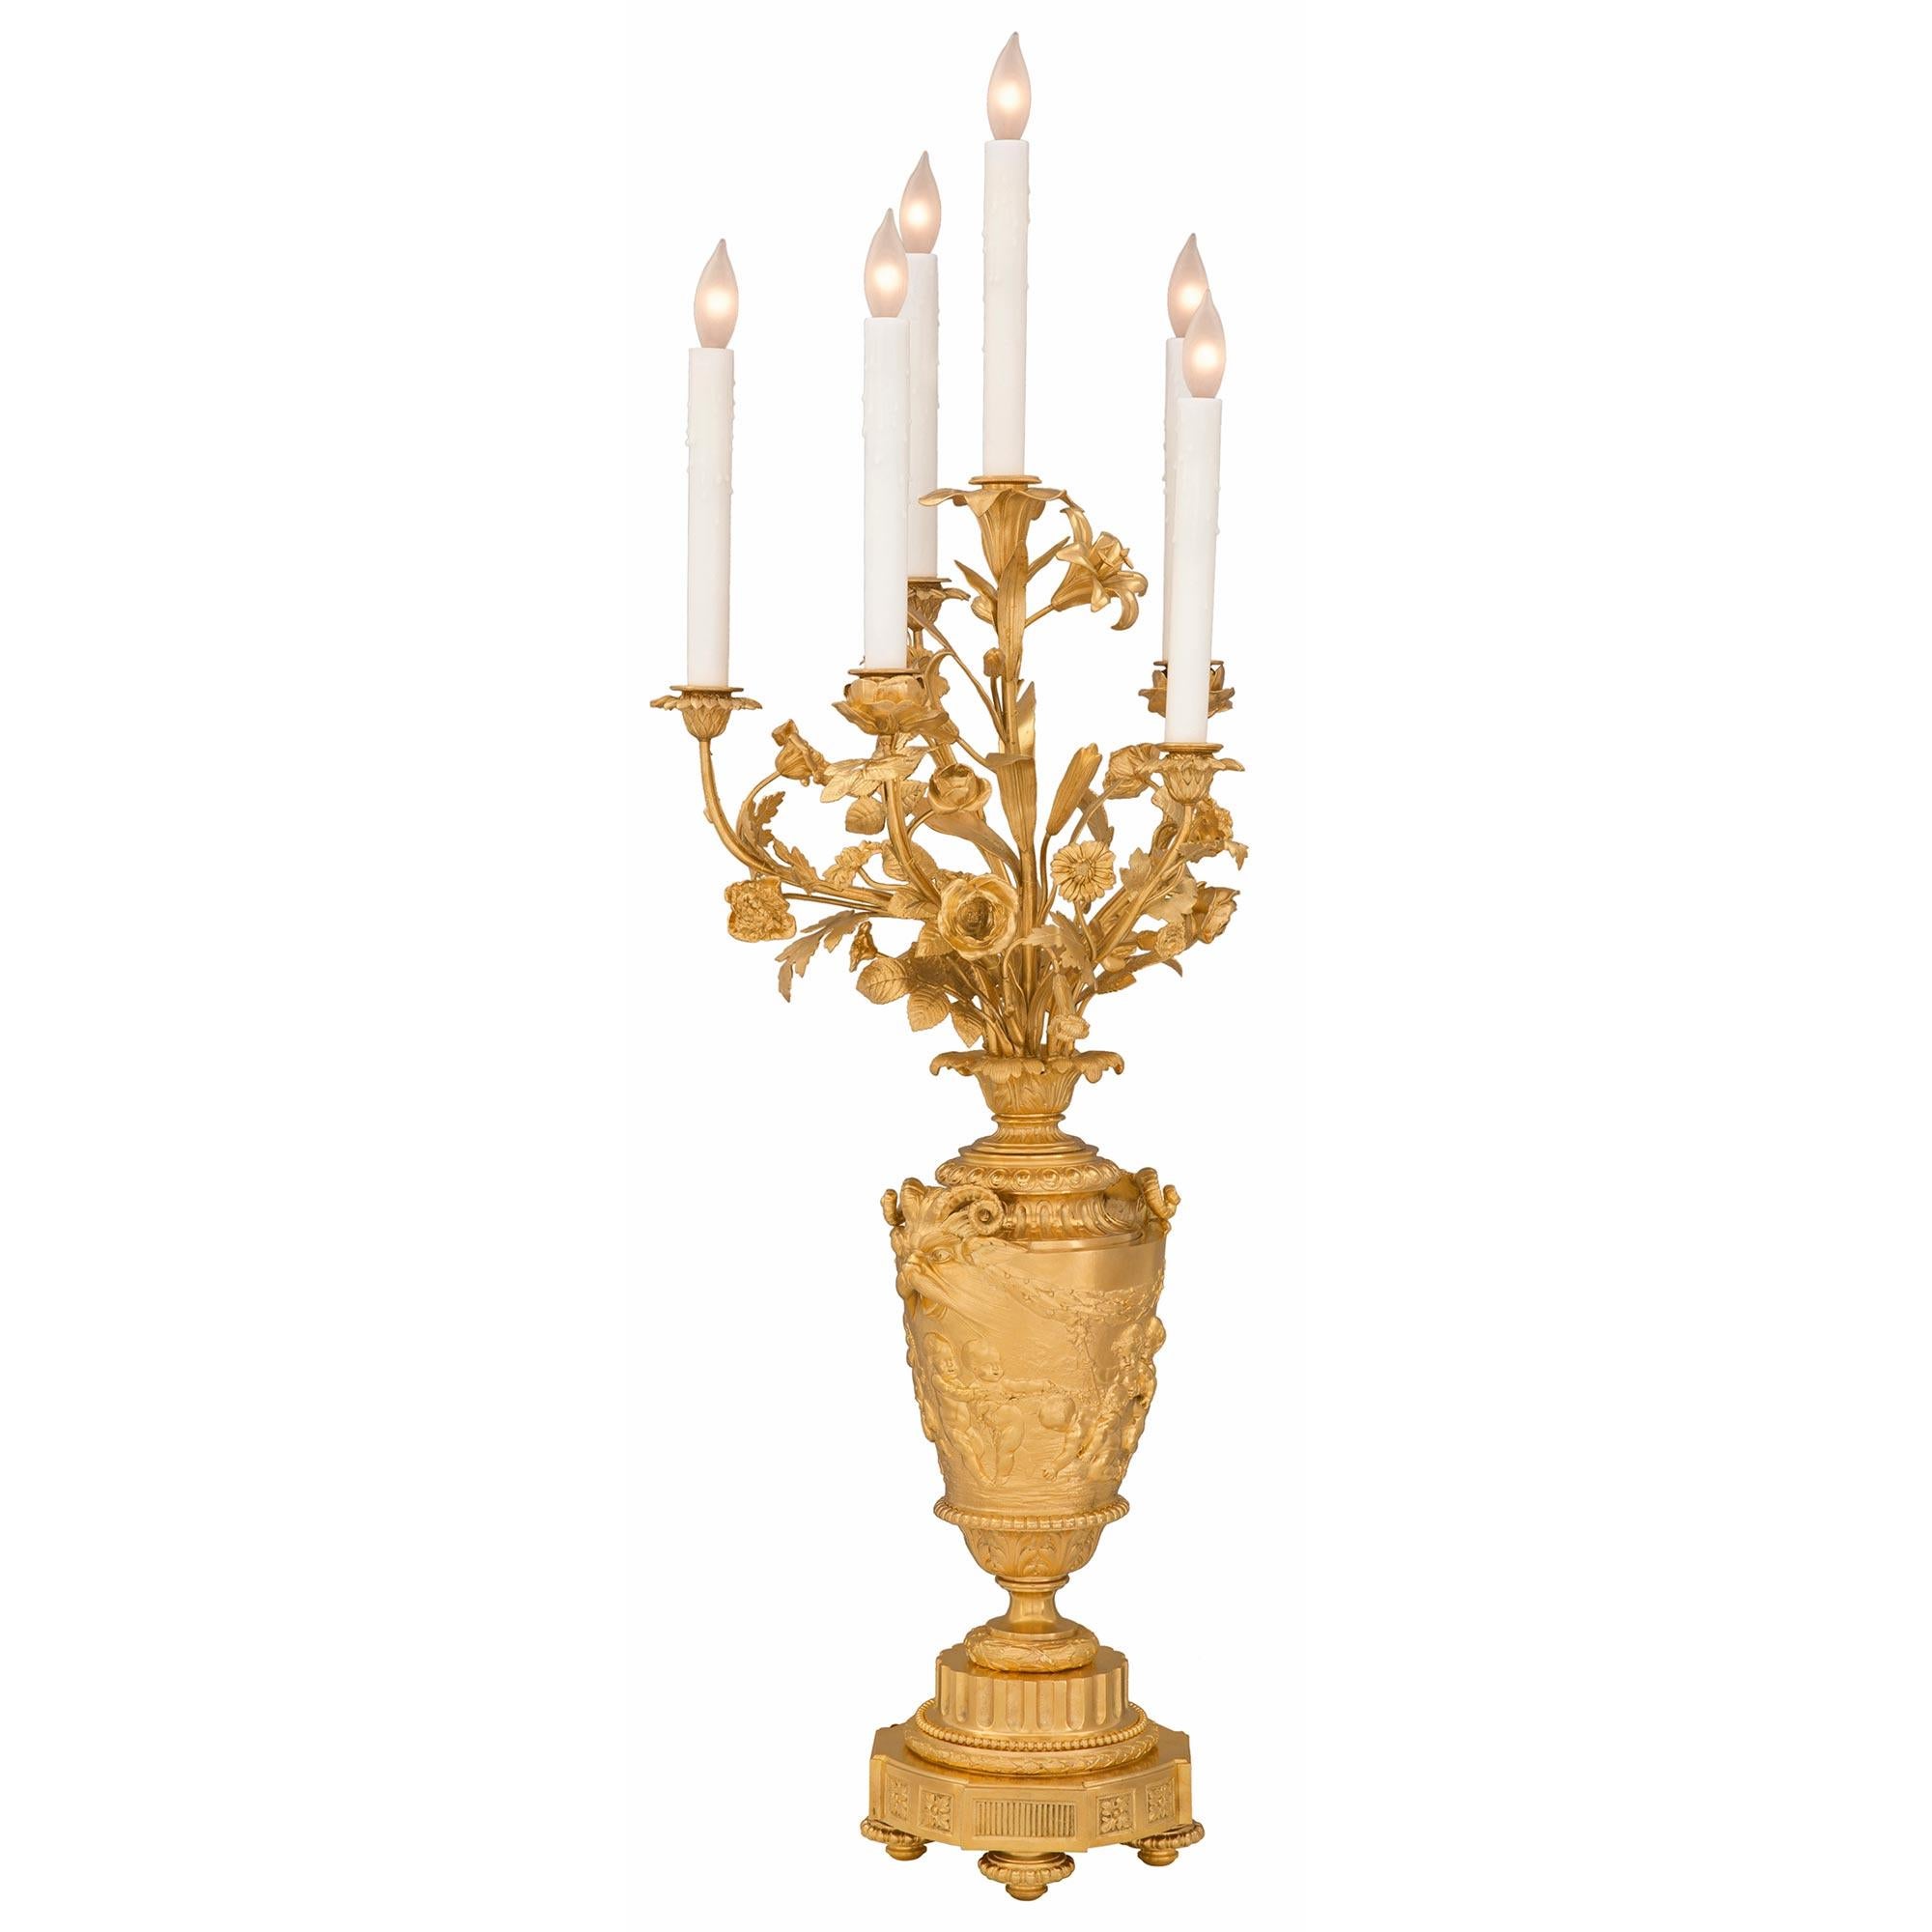 Une paire sensationnelle et de très haute qualité de lampes candélabres en bronze doré de style Louis XVI du 19ème siècle, signées par Victor Paillard et d'après un modèle de John Flaxman. Chaque lampe à cinq bras est surélevée par une fine base de